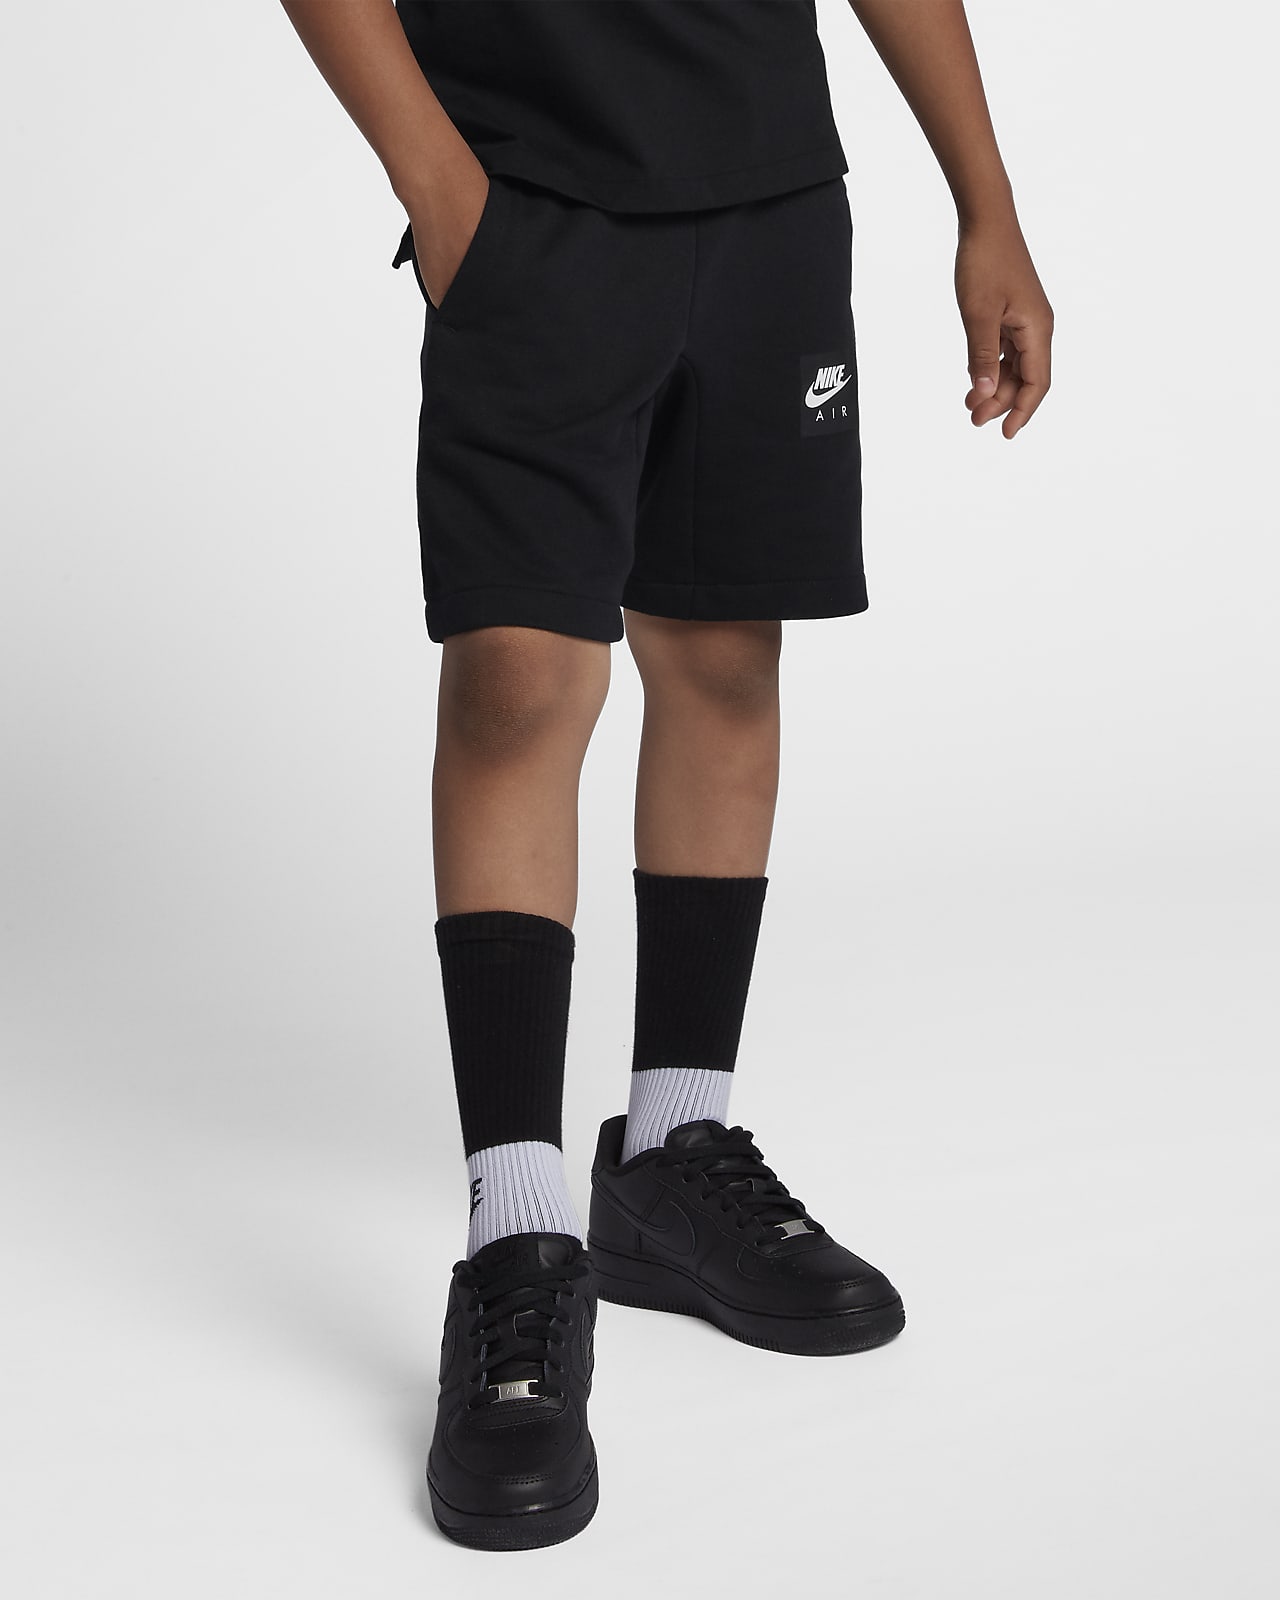 Nike Air Older Kids' (Boys') Shorts